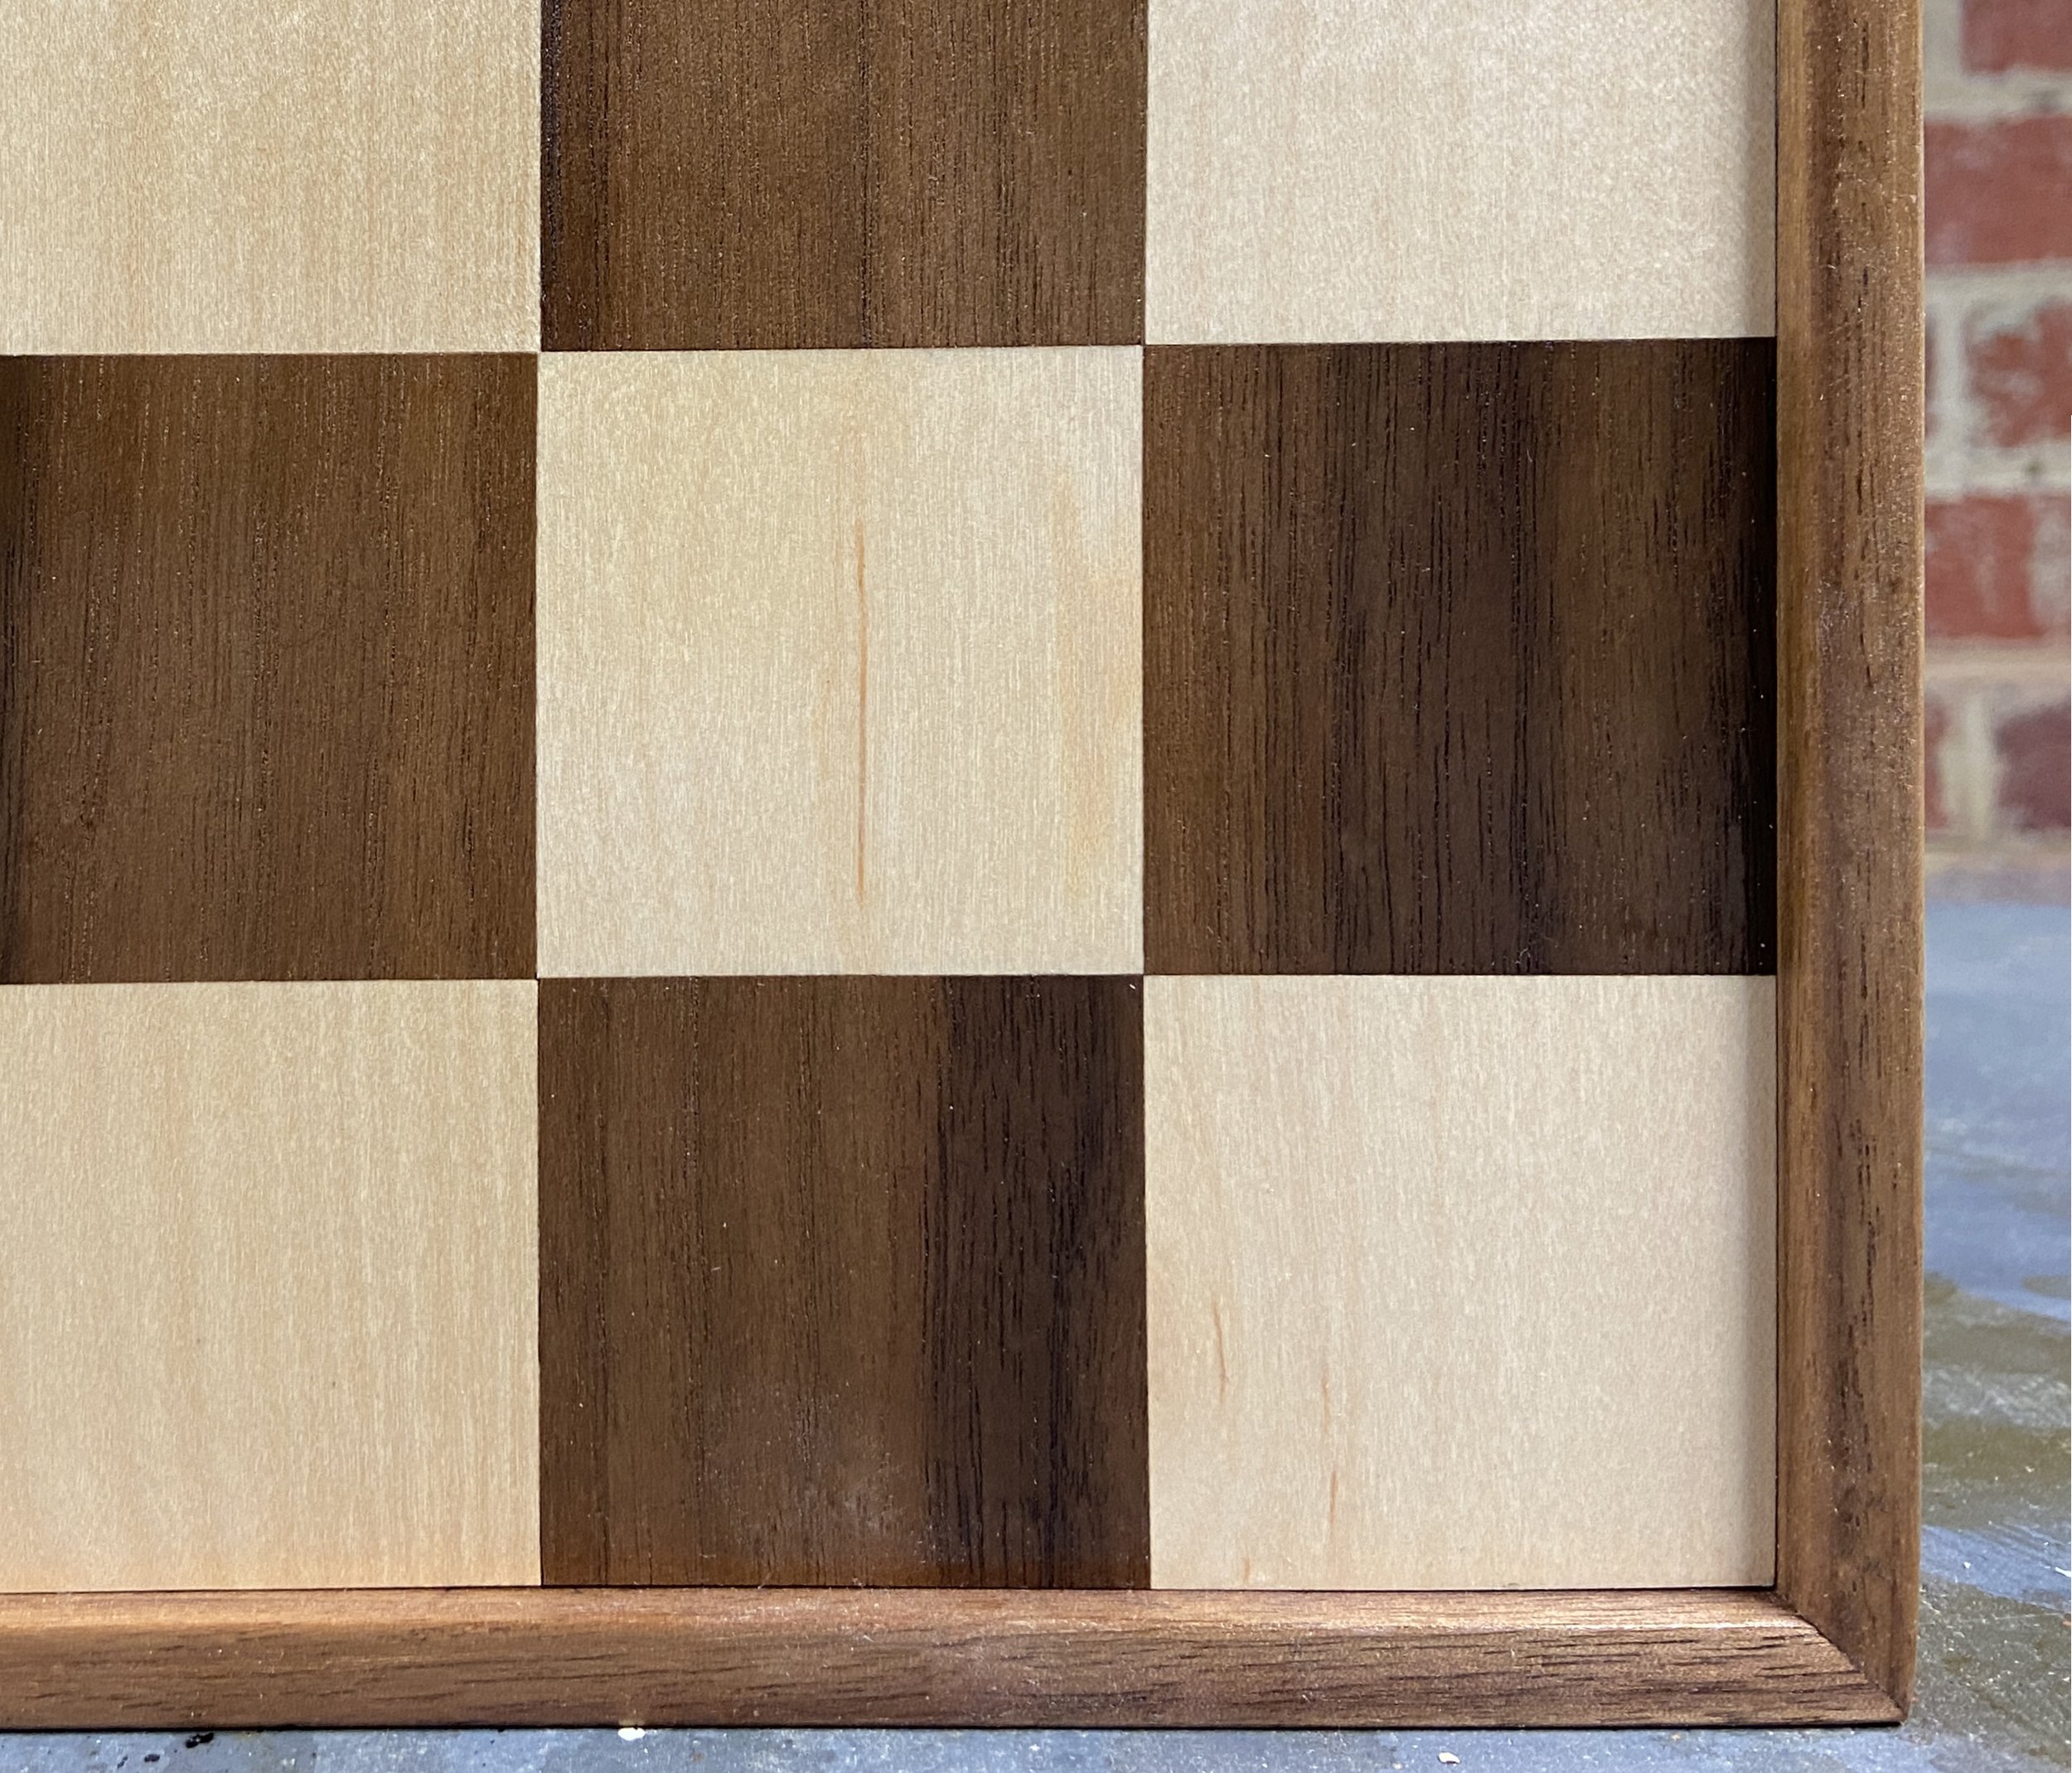 Board #017 – Walnut & Maple; (Detail)